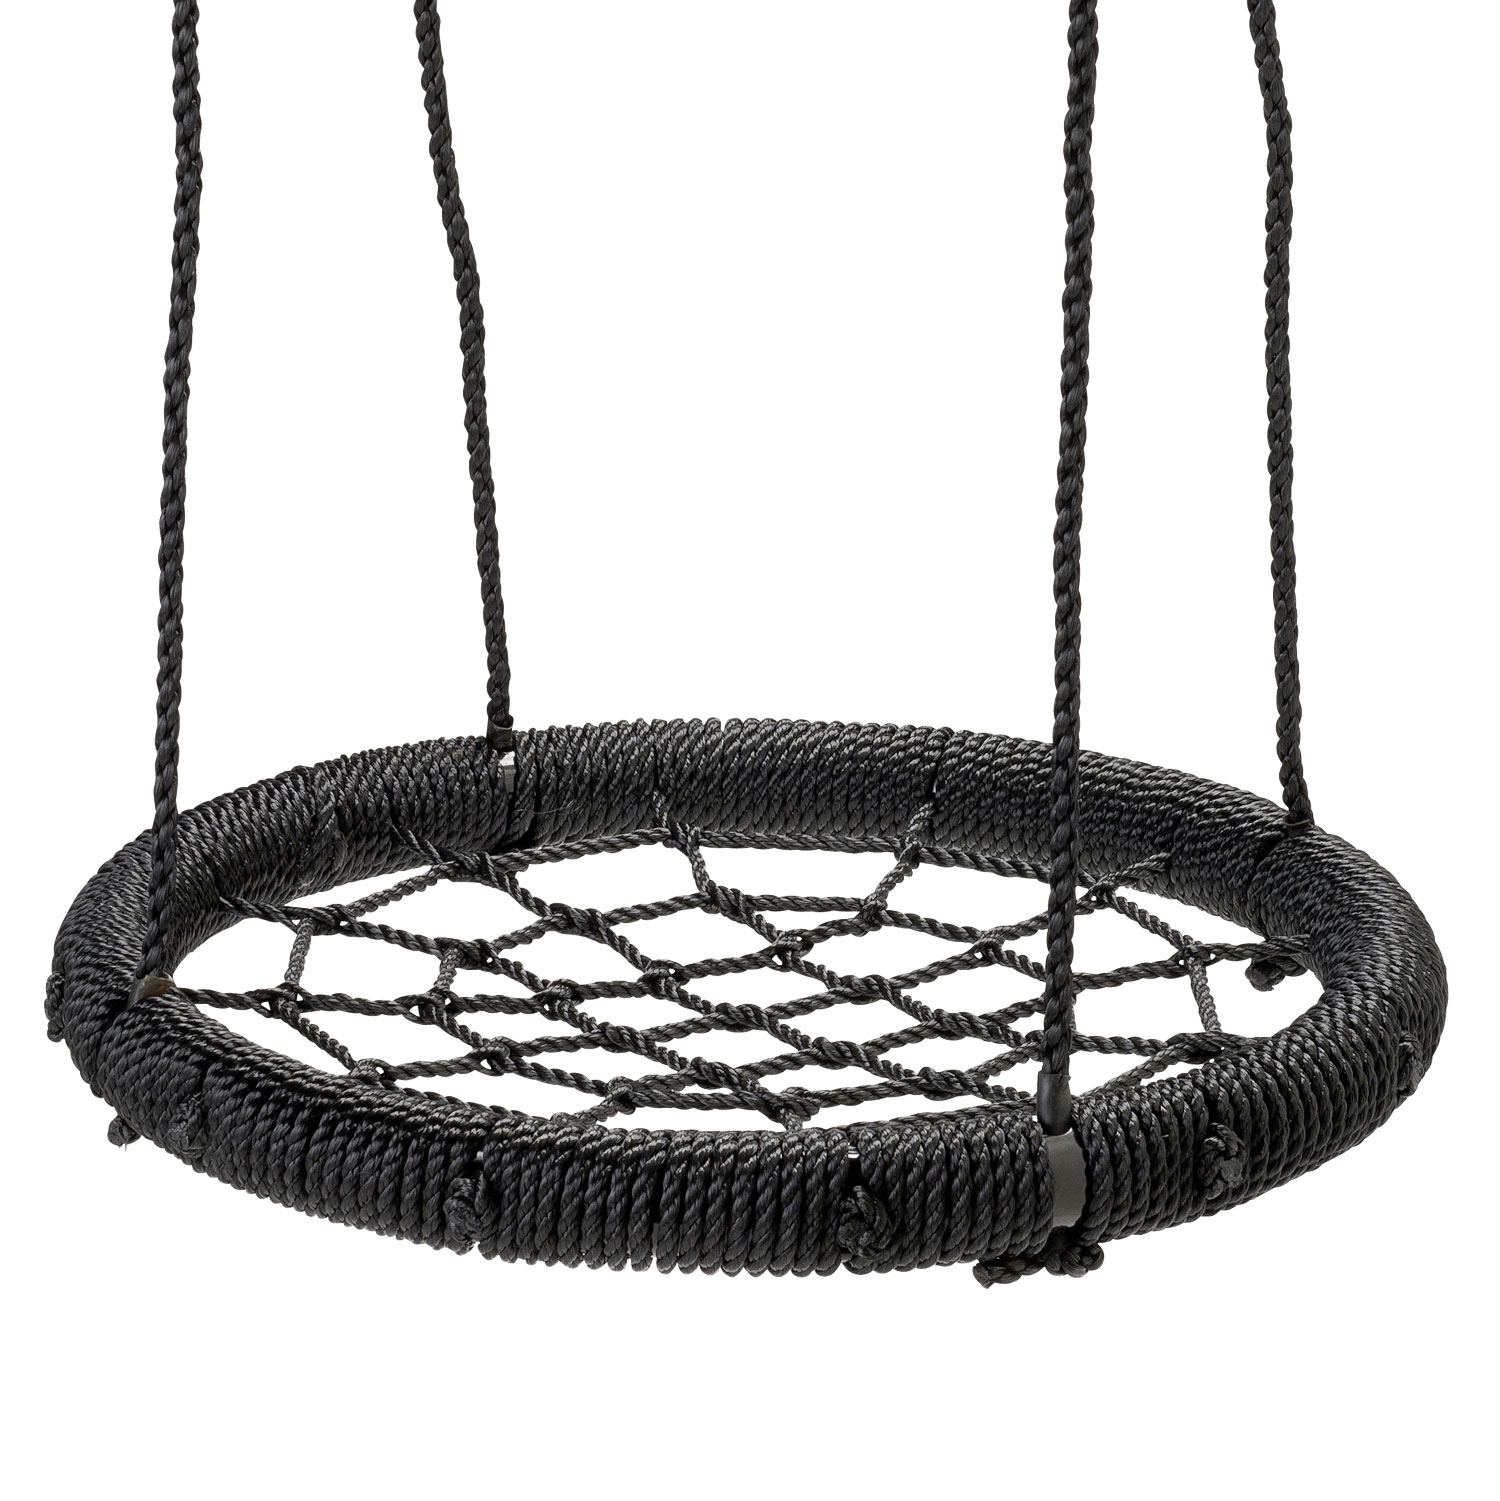 Nestschommel Zwart, 60cm